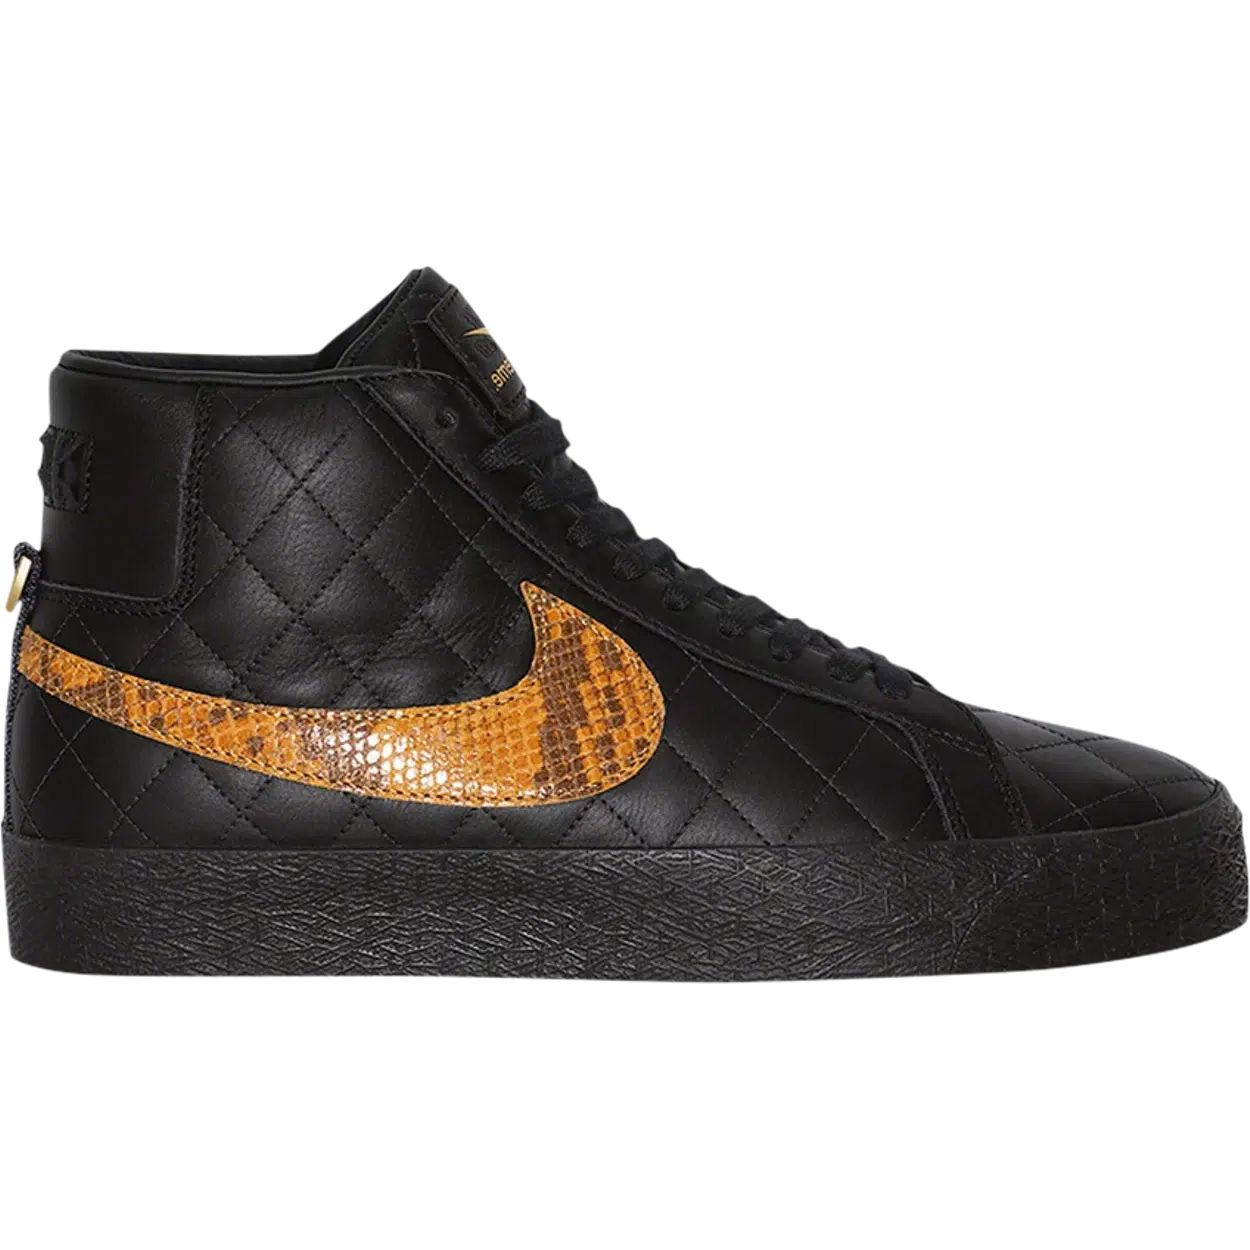 Supreme® x Zoom Blazer Mid QS SB 'Black' | Waves Never Die | Nike | Sneakers